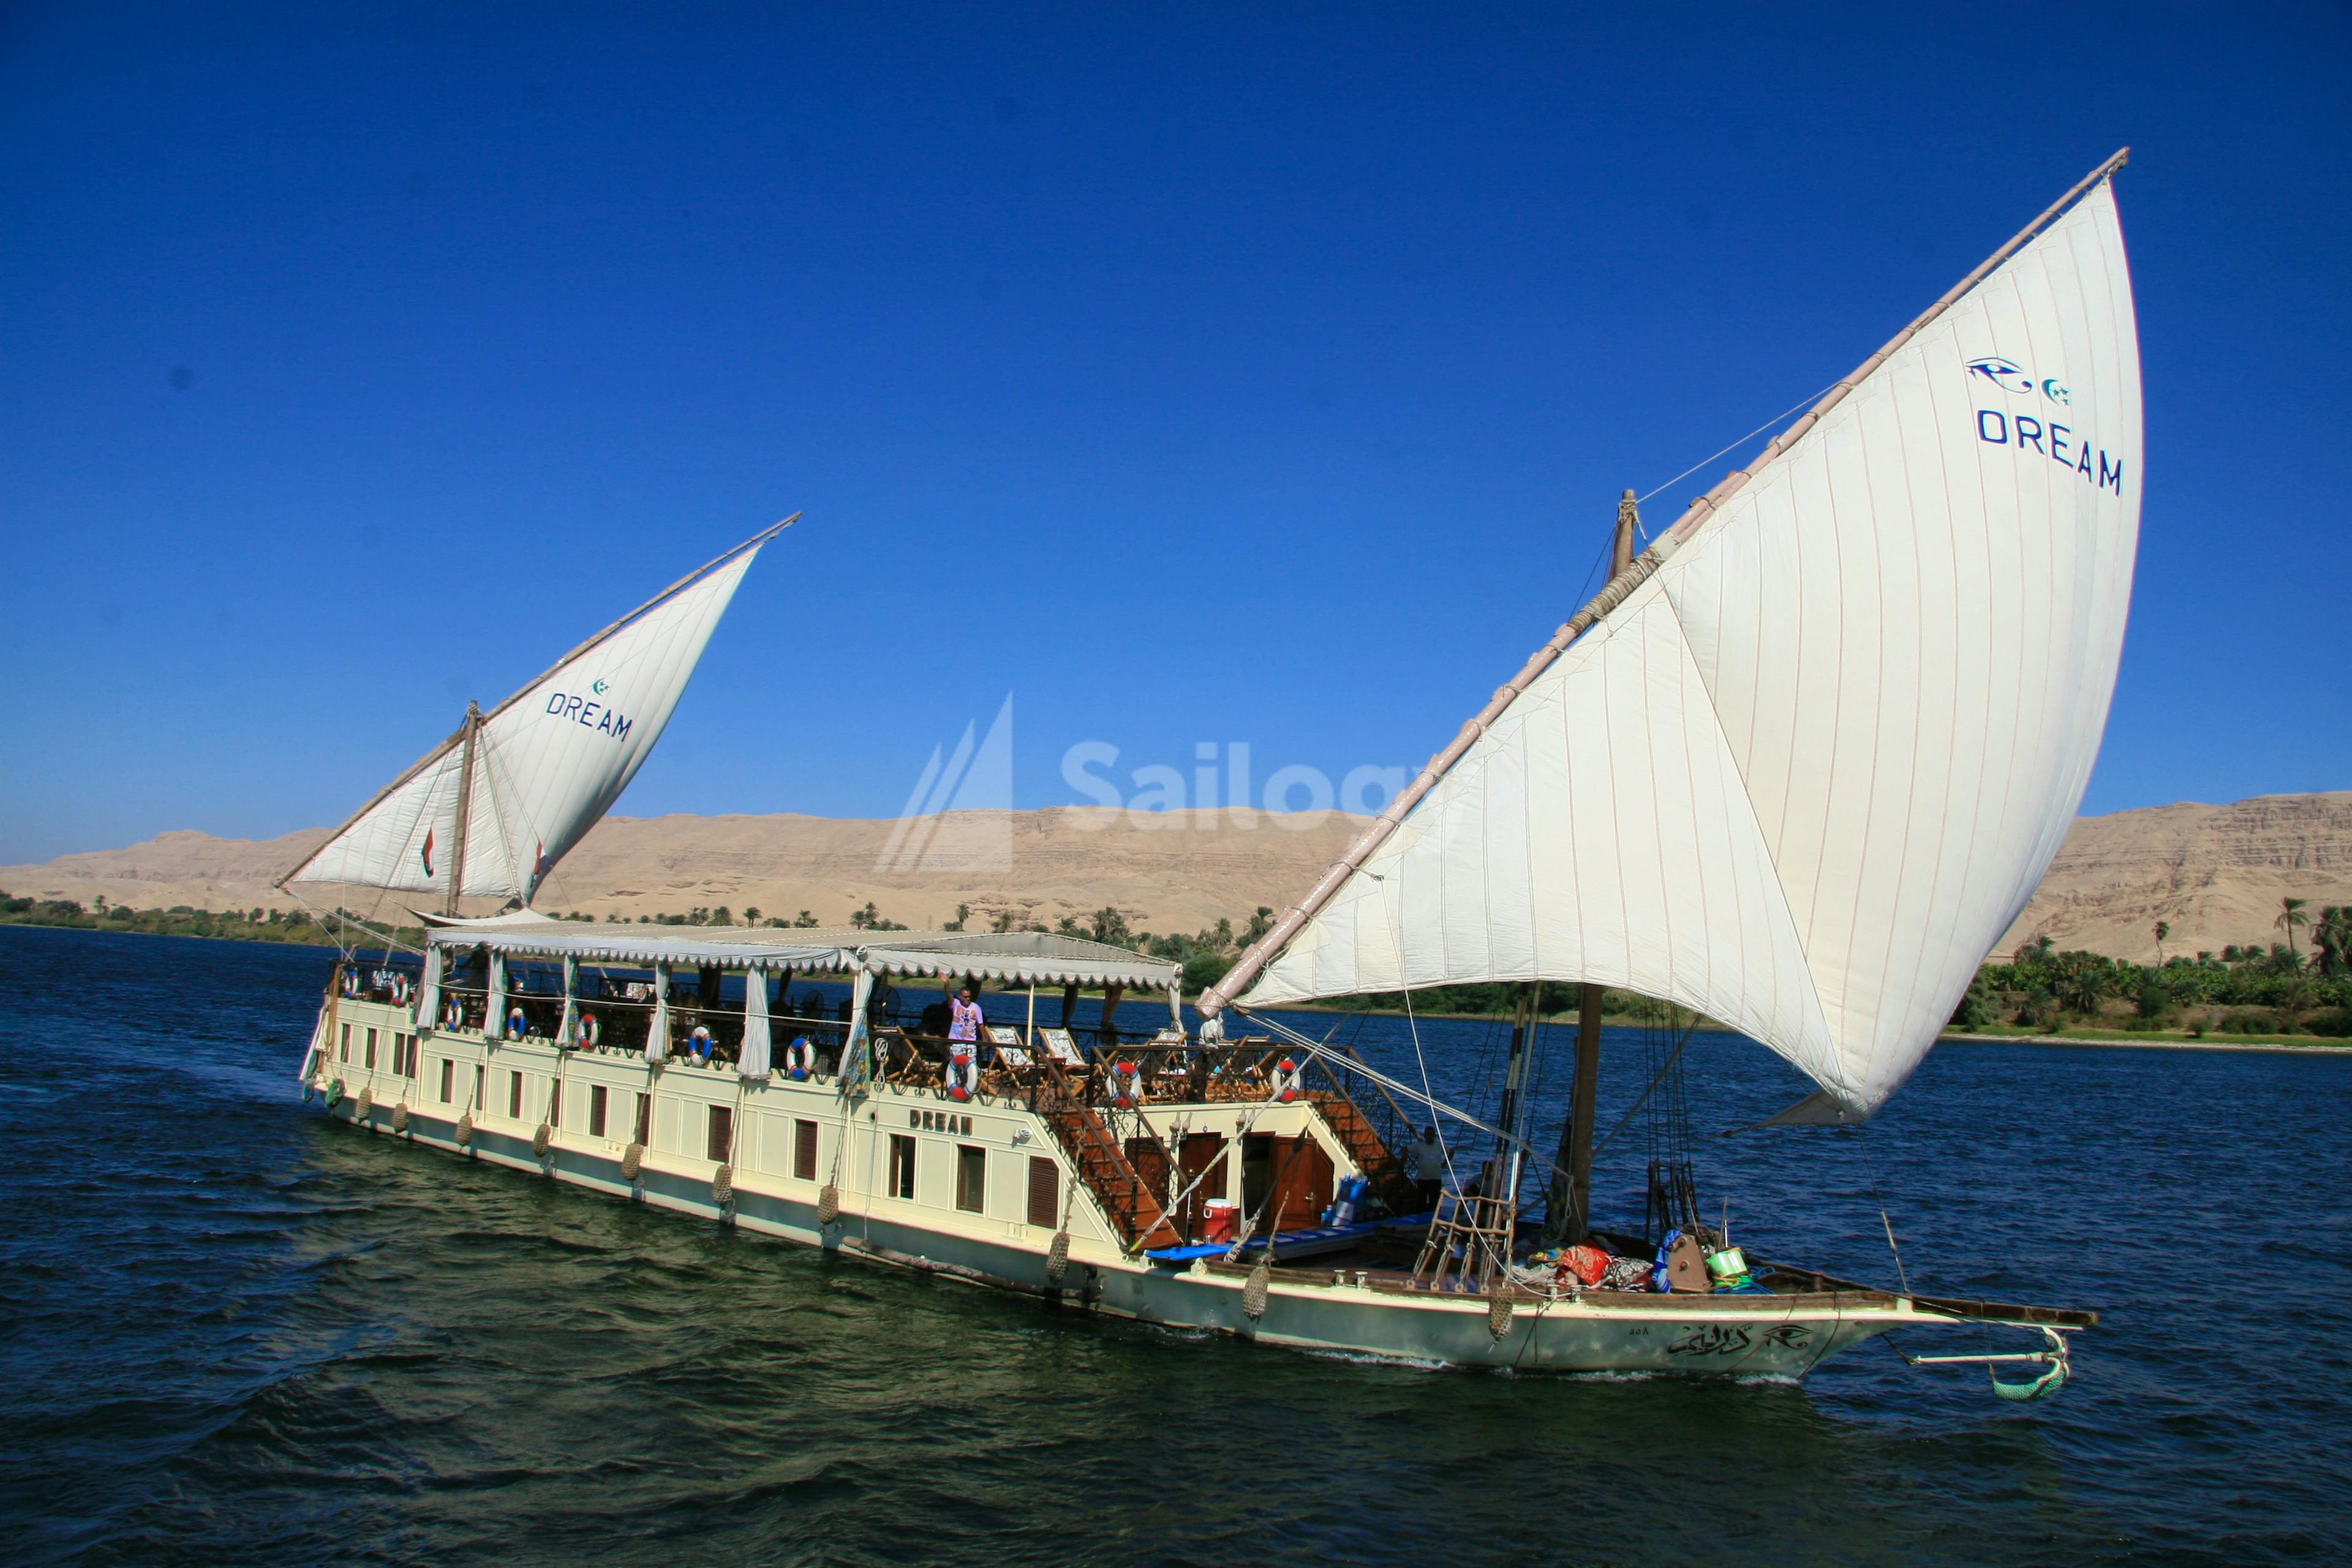 Dahabiya sailing boat